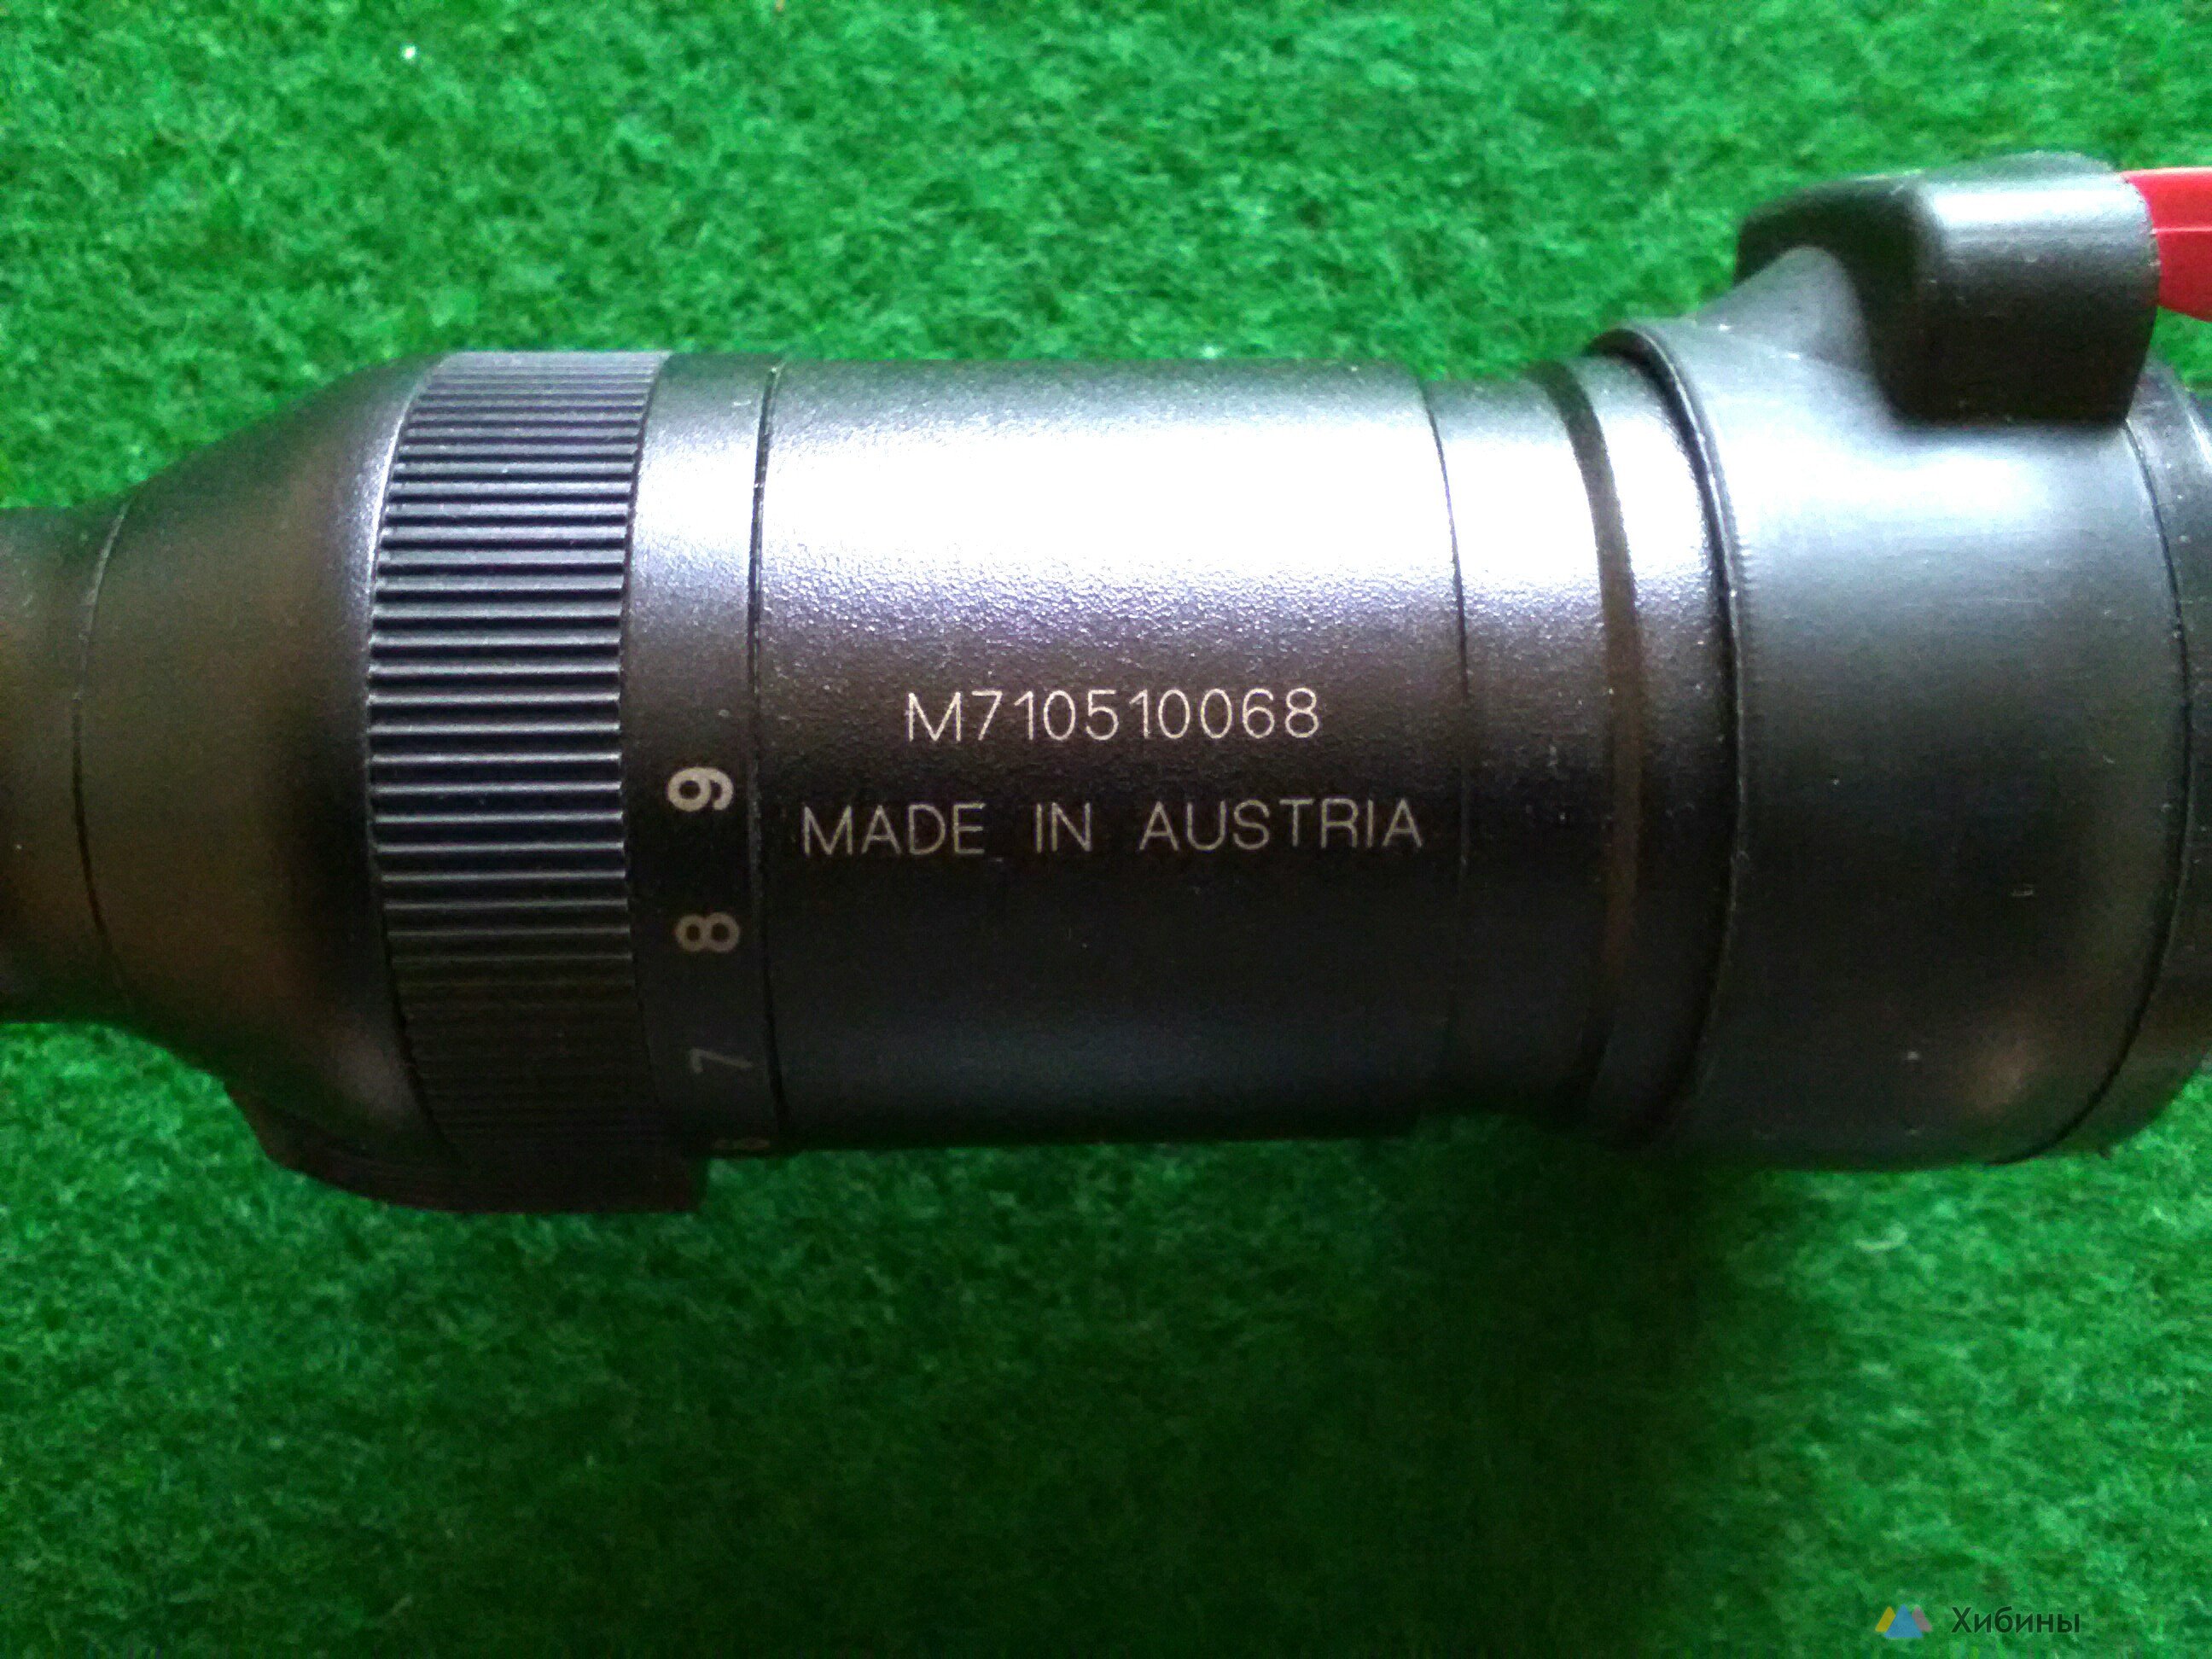 Прицел Swarovski 3-9x36 пр-во Австрия